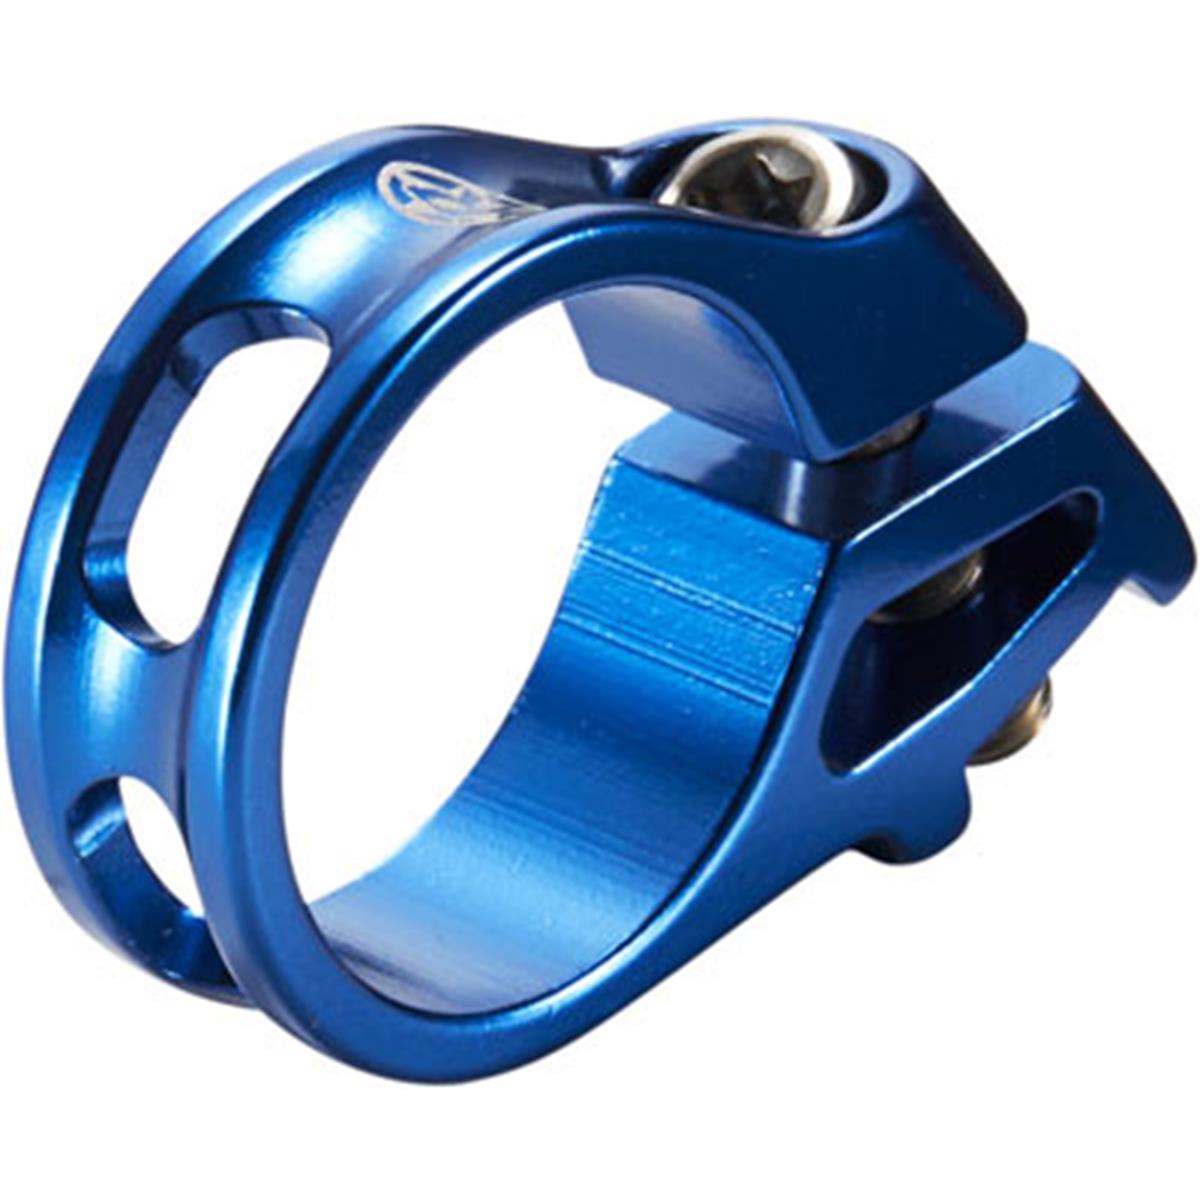 Reverse Components Collier Trigger Bleu, pour levier de vitesse SRAM Trigger